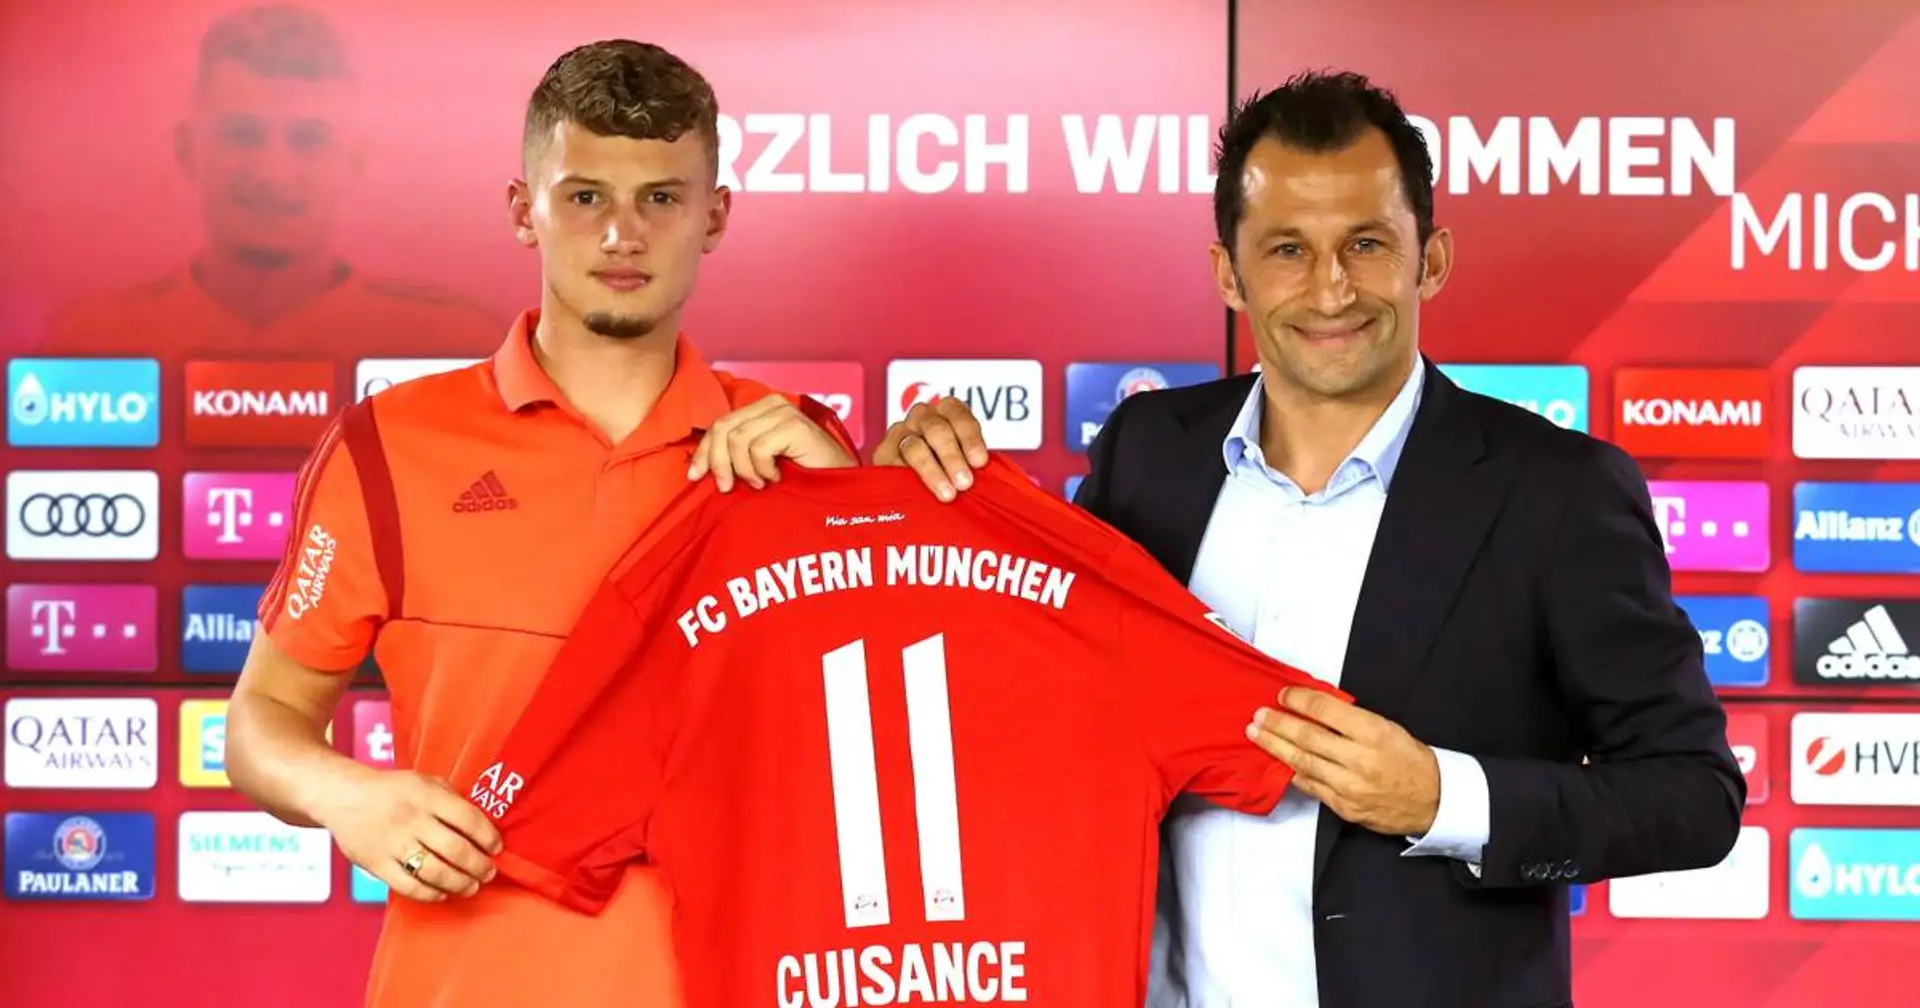 Cuisance: Salihamidzic sagte mir, dass ich bei Bayern viel spielen werde, das ist leider nicht eingetroffen